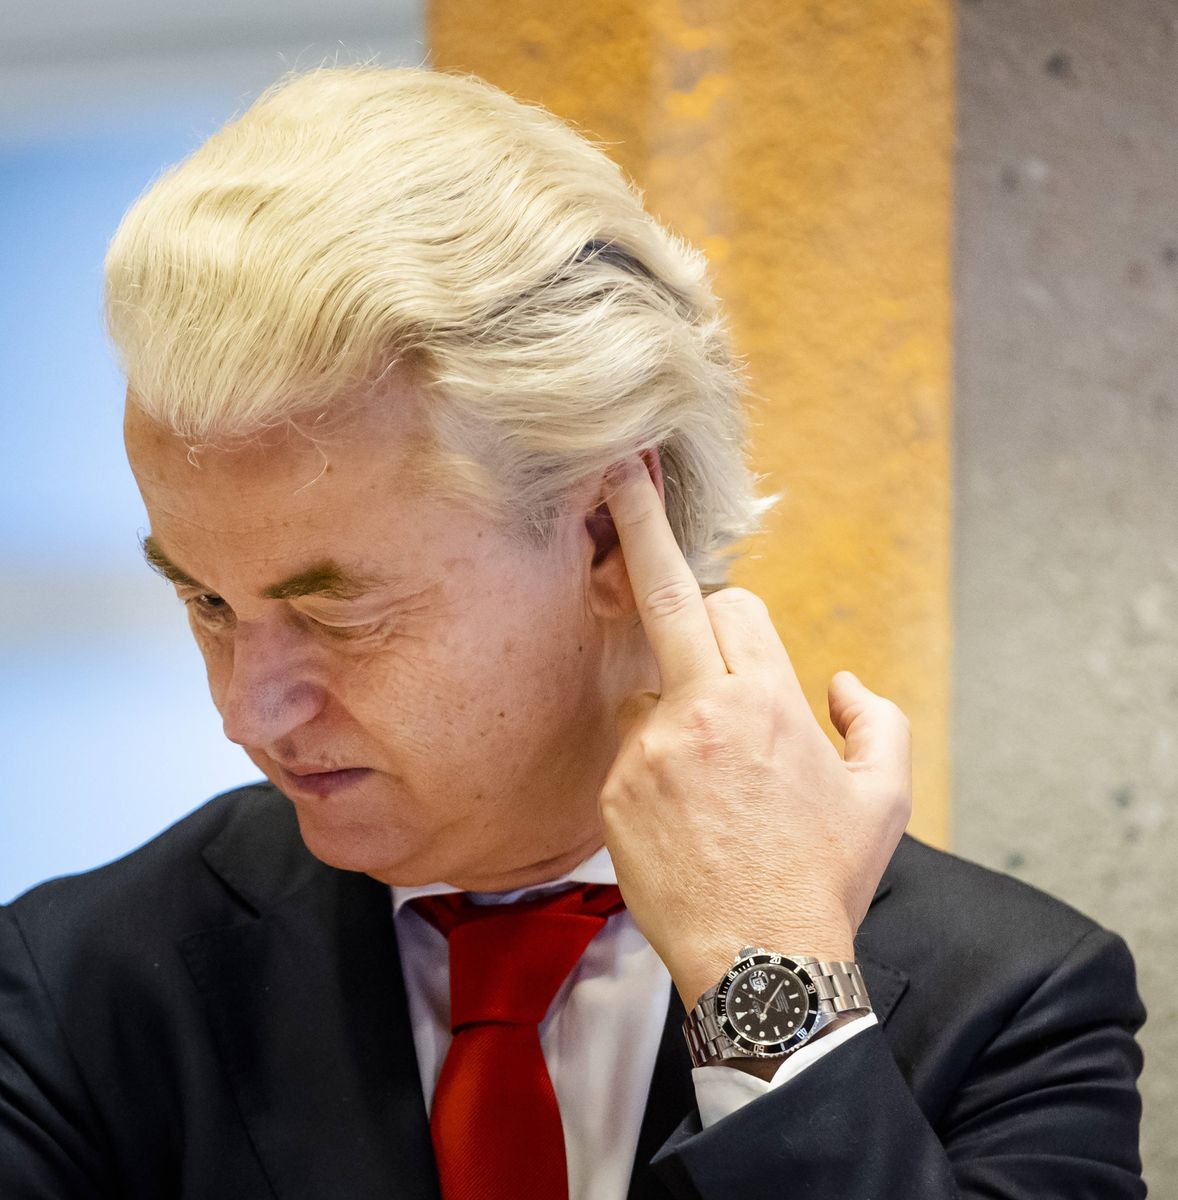 Geert Wilders kon alleen winnen omdat het establishment hem dat toestond